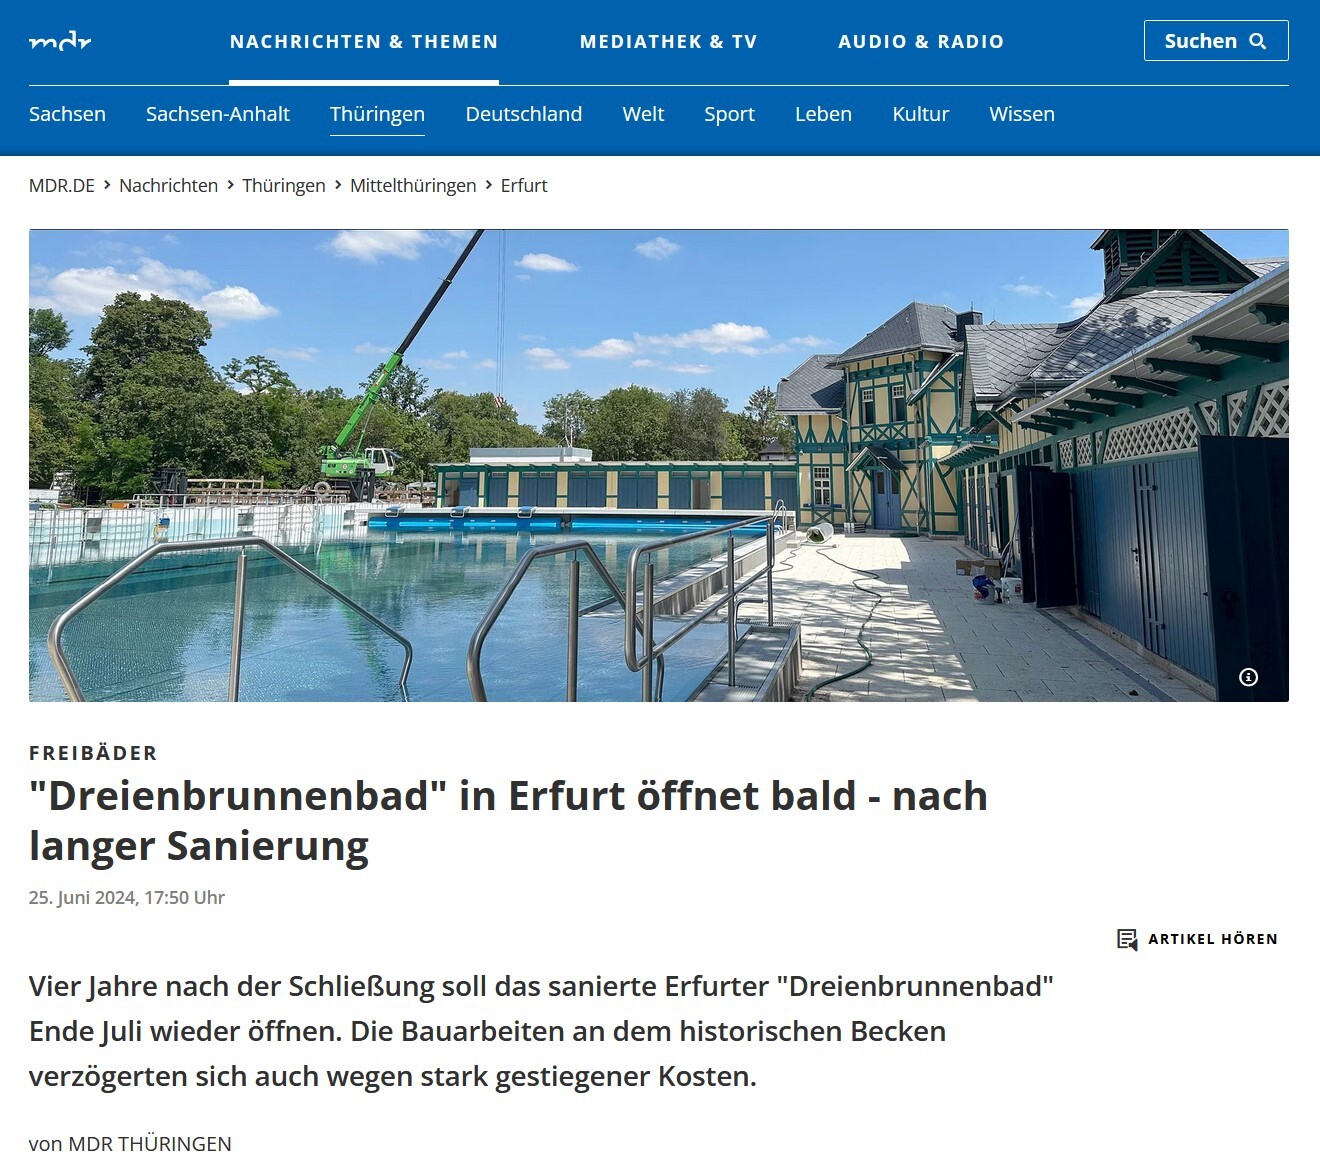 Presse: Erfurter Dreienbrunnenbad öffnet bald nach langer Sanierung, Bild: Quelle: MDR, 26.6.2024